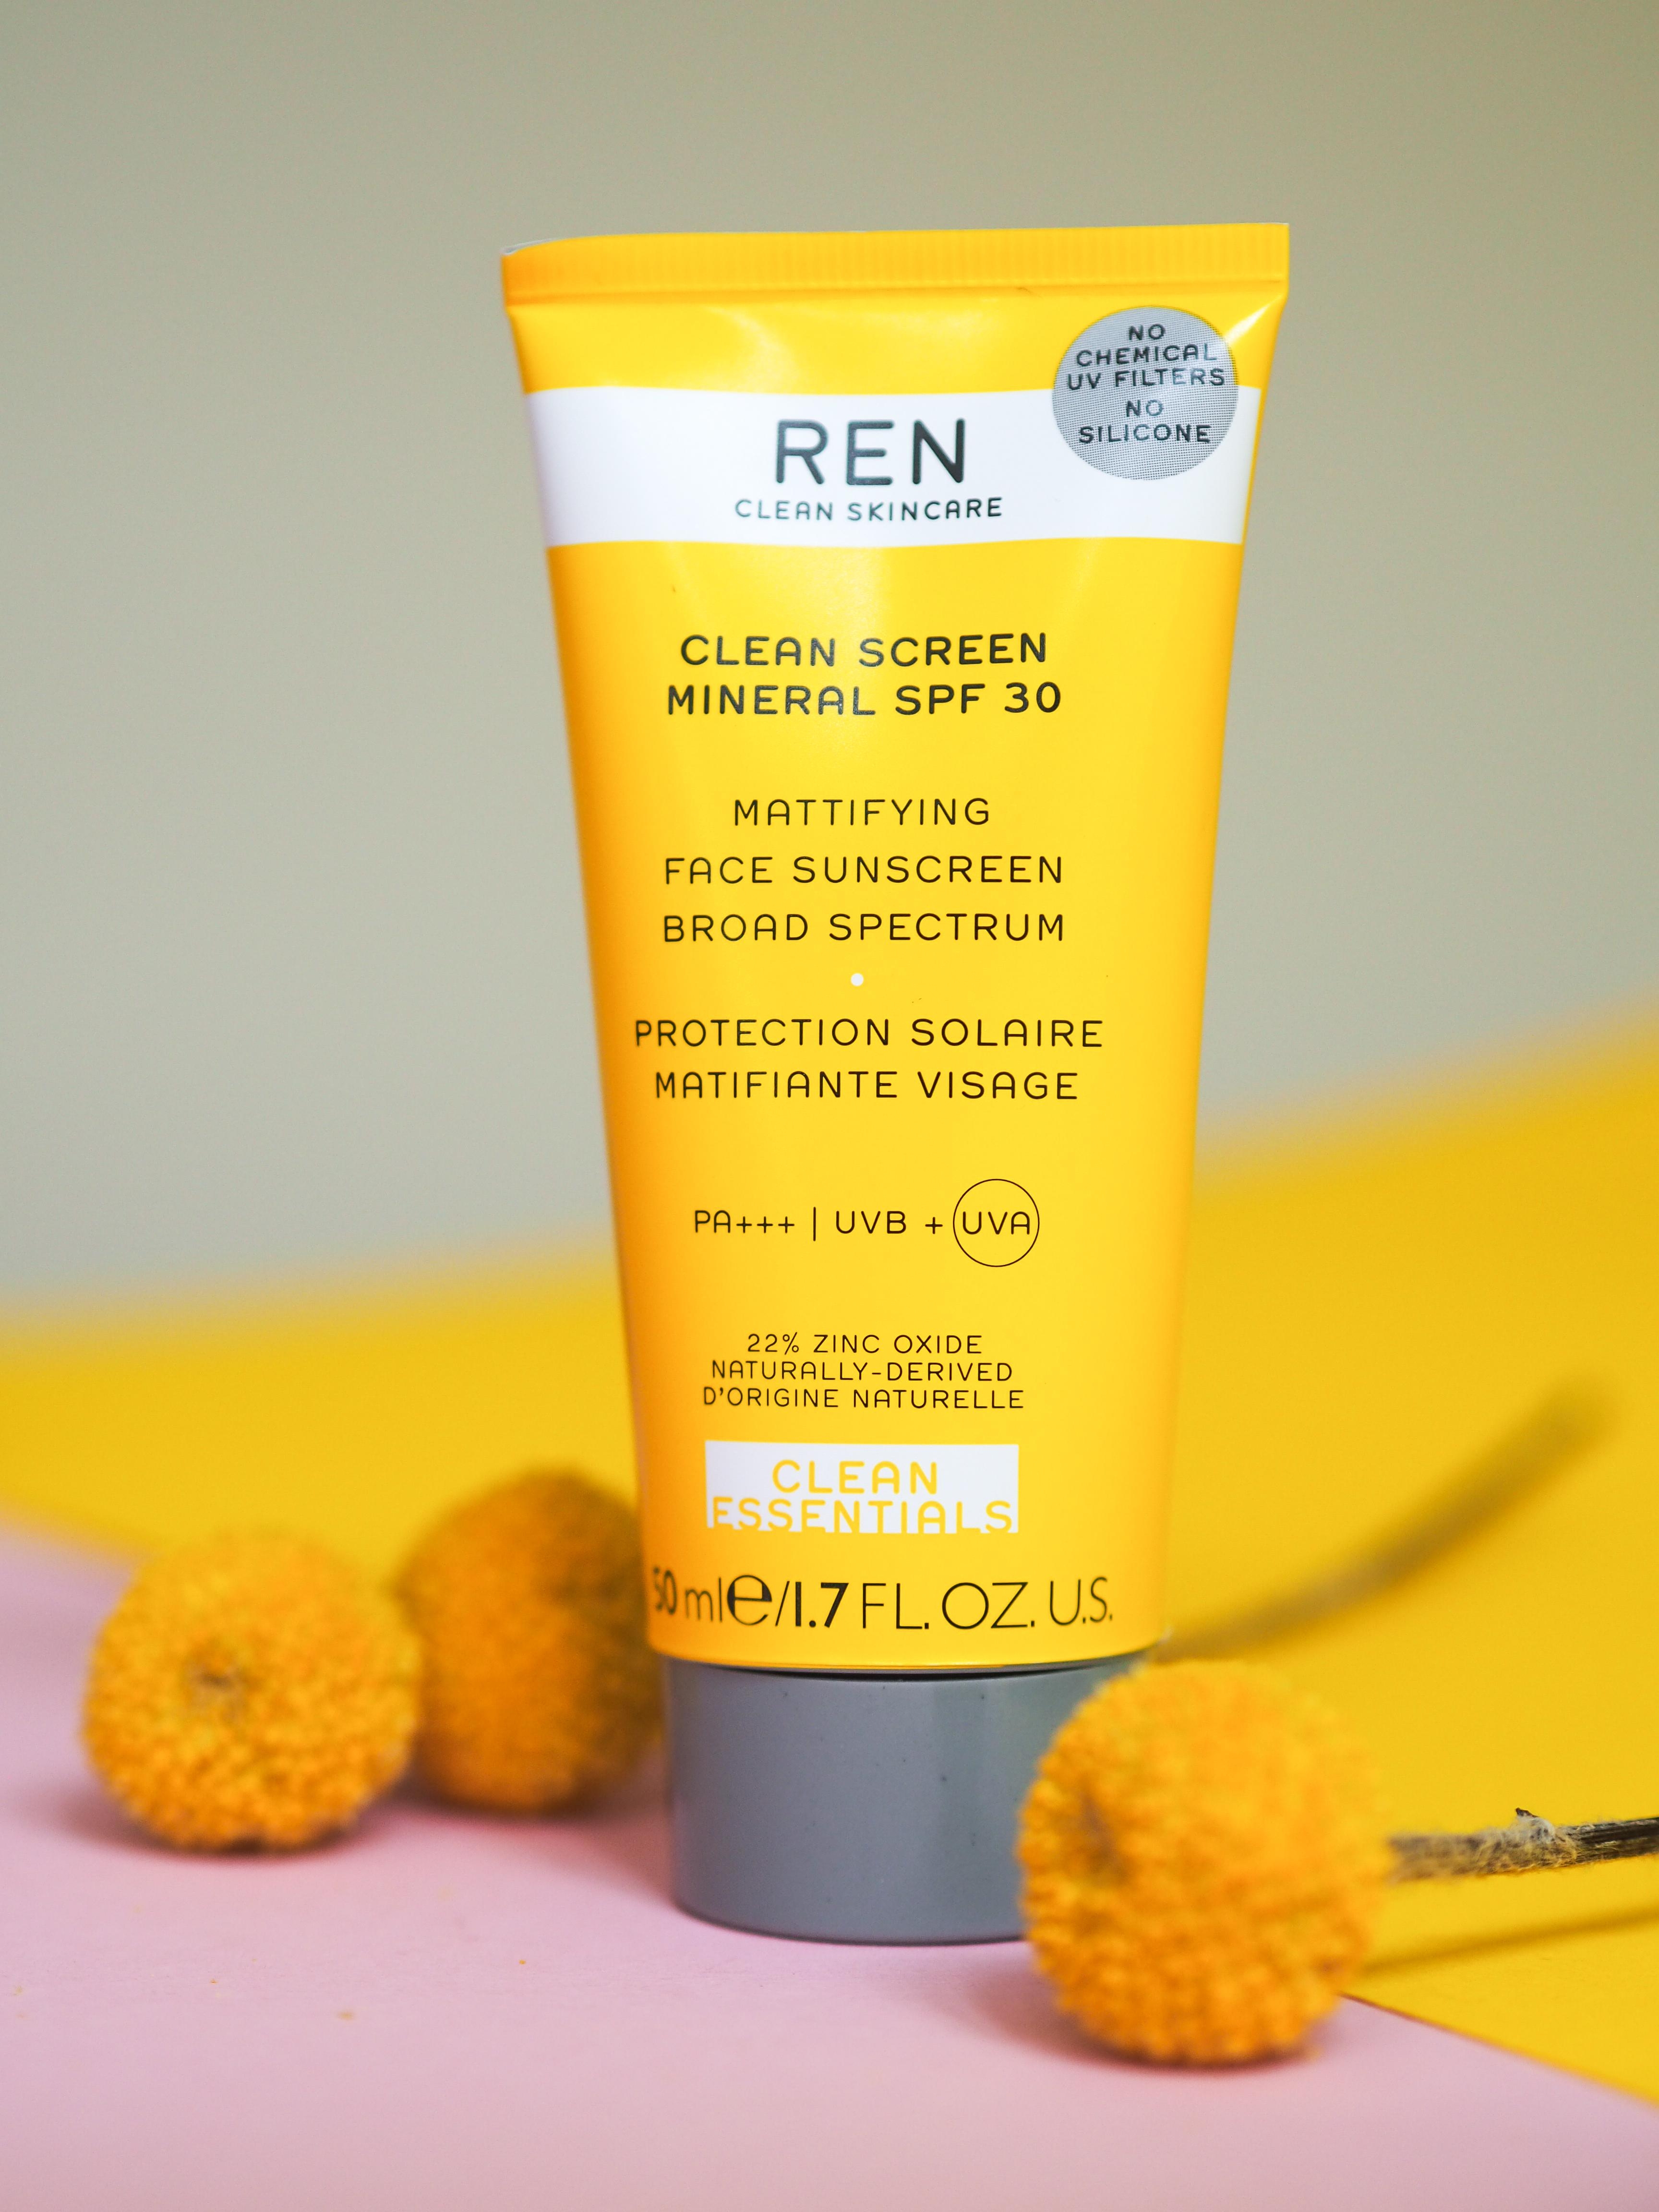 Ein mattierender Sunscreen extra für das Gesicht. #REN überzeugt auch mit einer recycelten Verpackung. #beautylieblinge